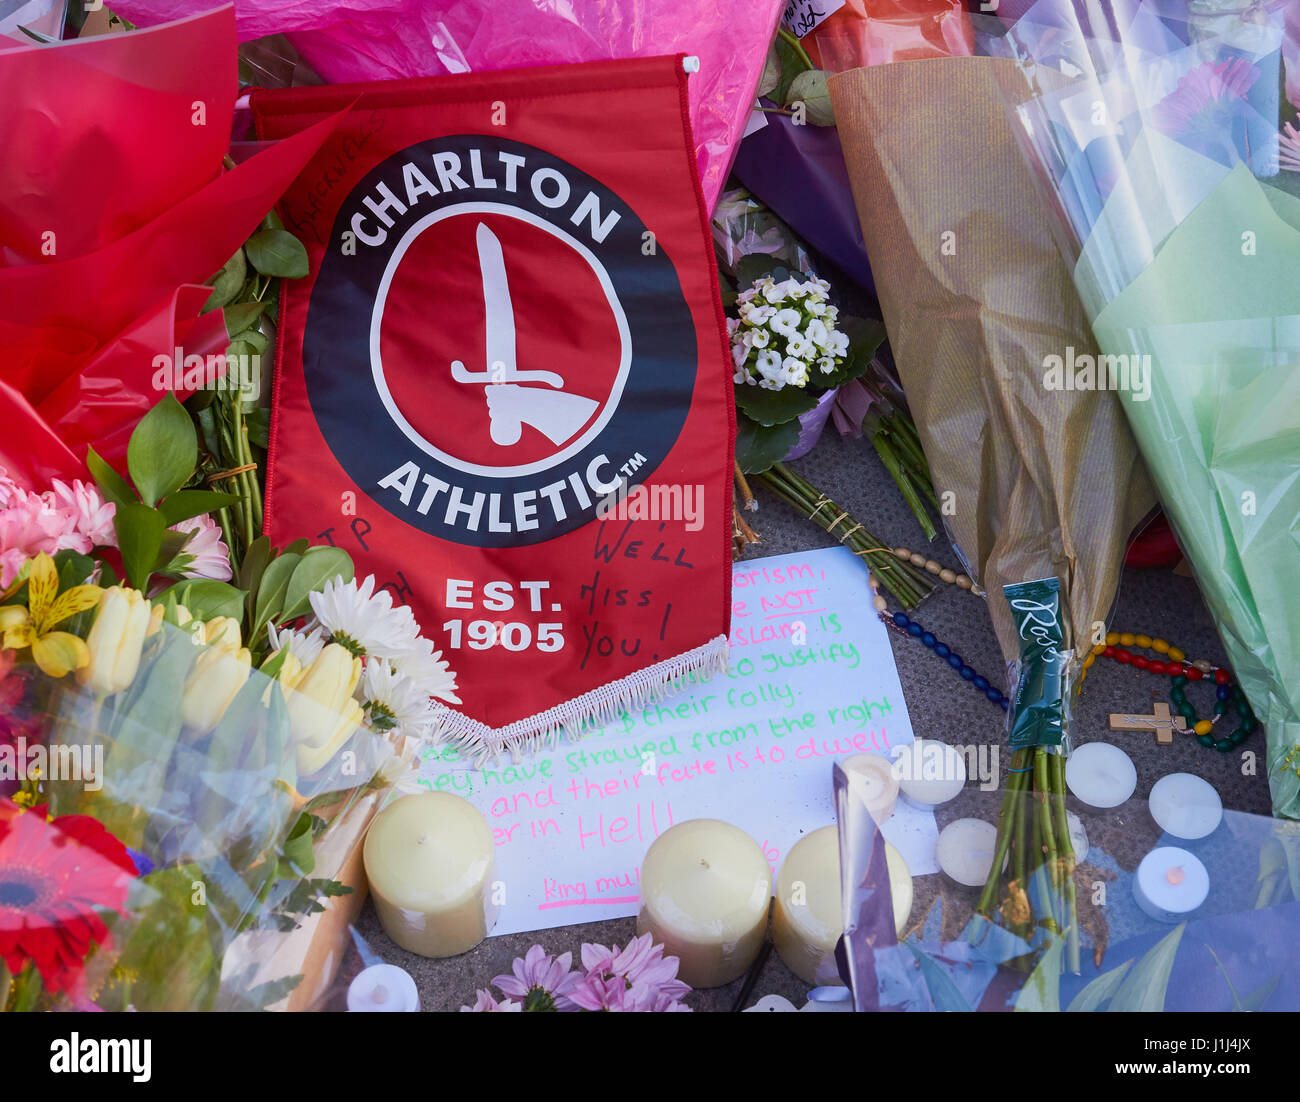 Charlton Athletic bandiera, il football club è stata supportata da PC Keith Palmer il poliziotto ucciso nella Westminster attacco terroristico a Londra, Inghilterra Foto Stock